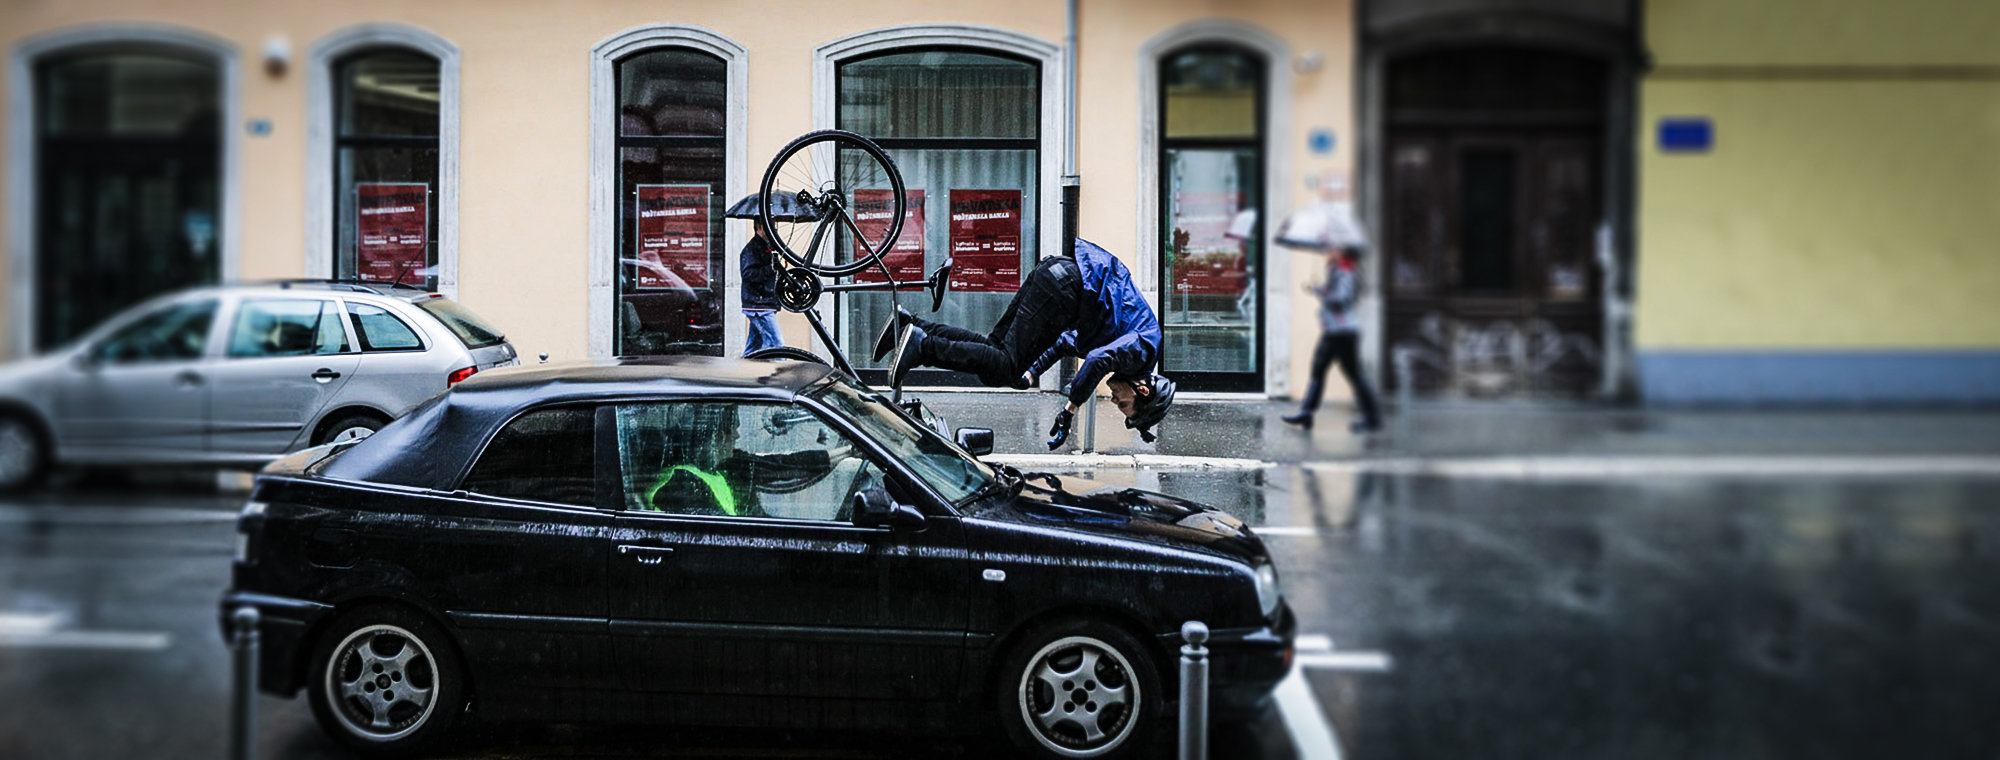 Škoda zahajuje dopravně-bezpečnostní kampaň "Stay On The Safe Side" pro cyklisty i motoristy